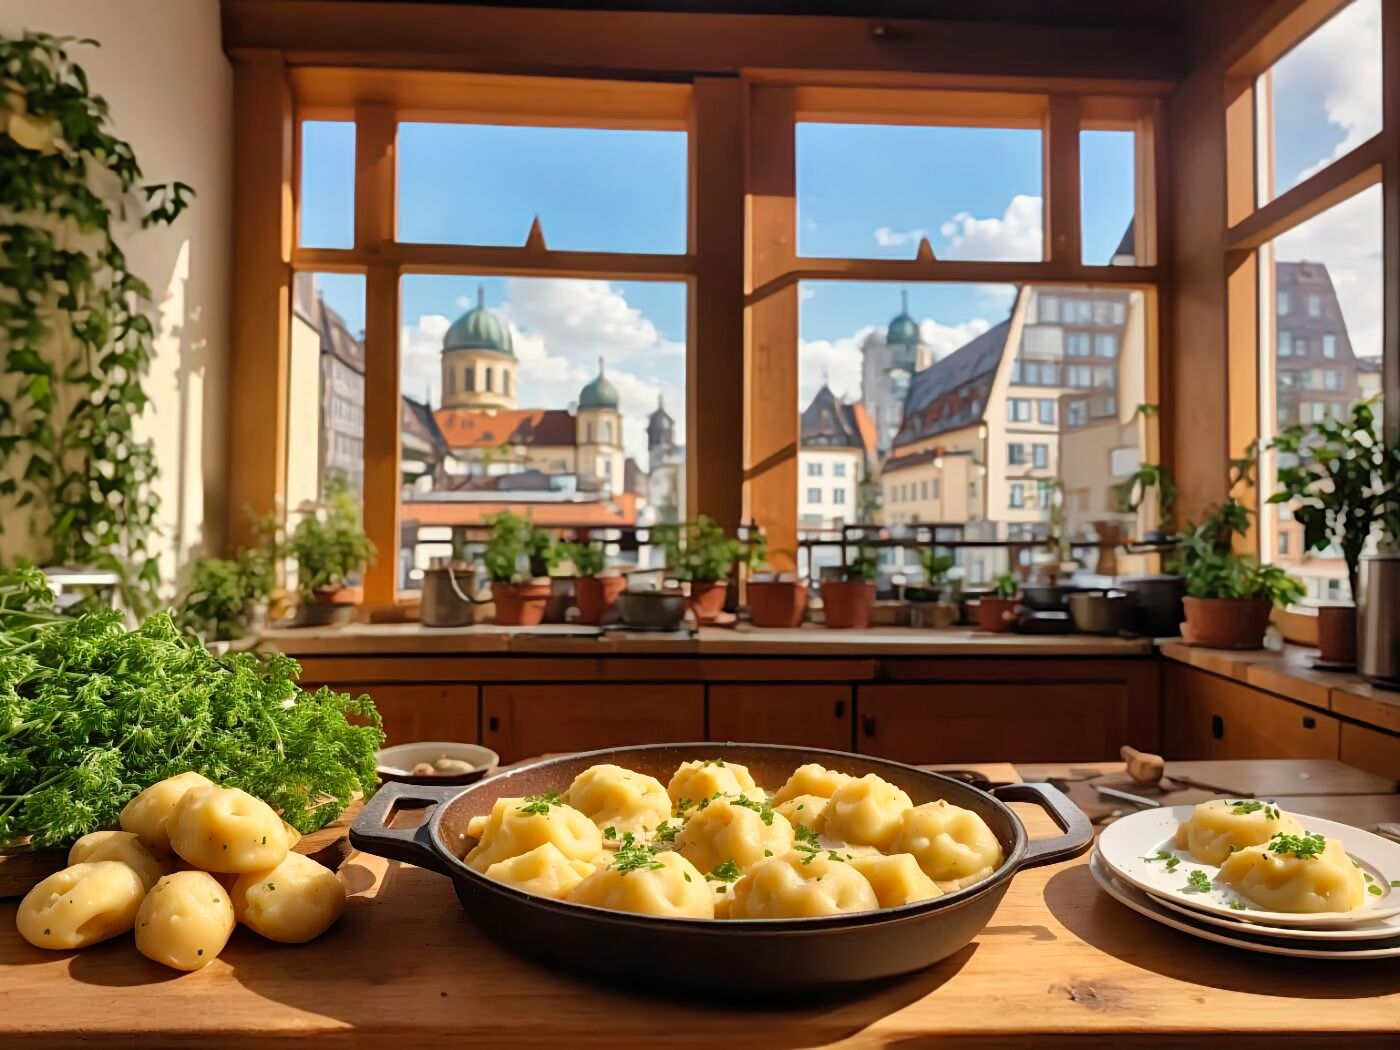 German Kartoffelklößeh Recipe